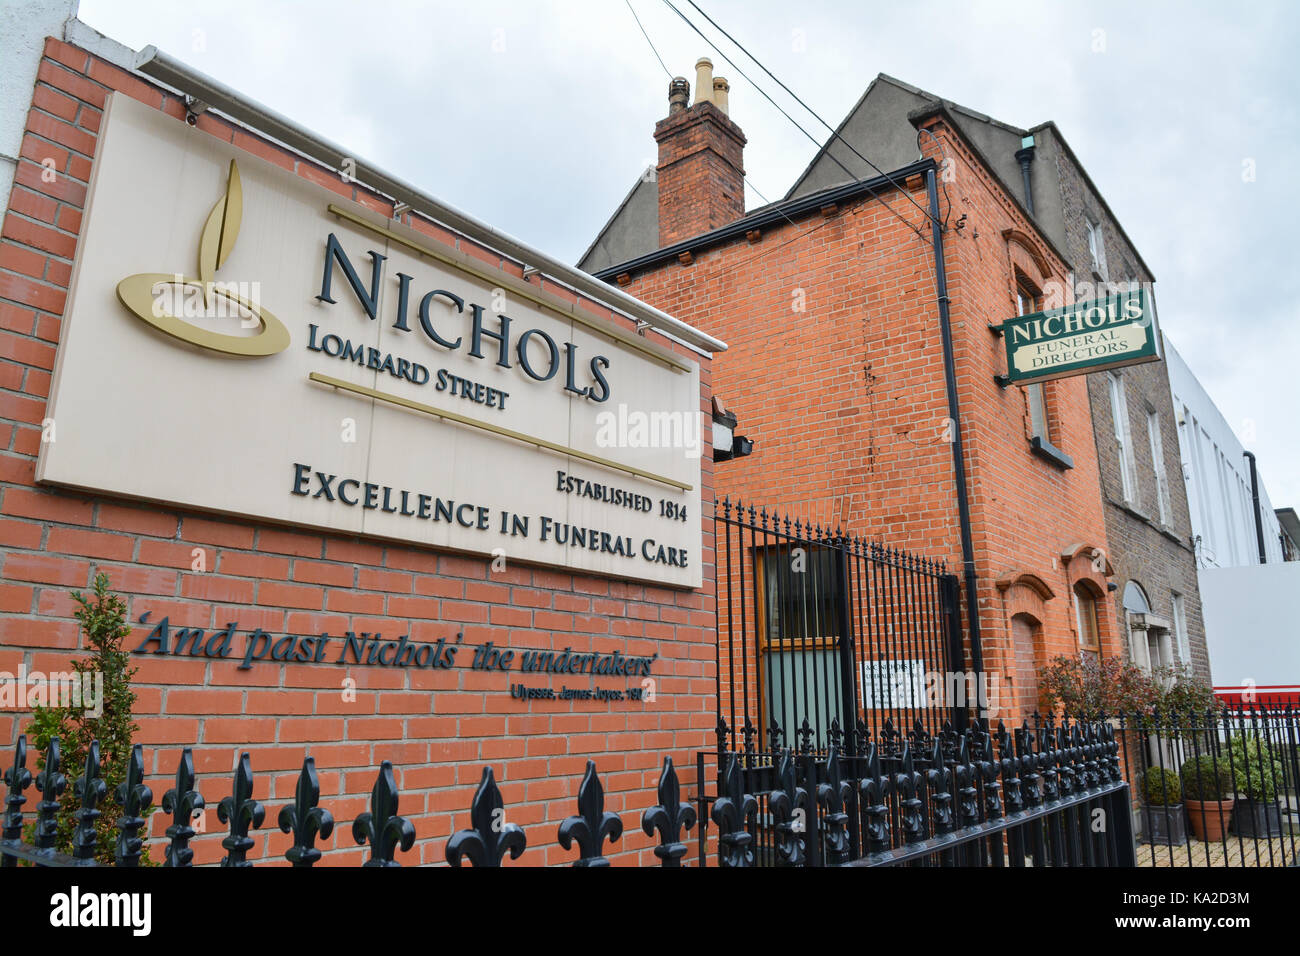 Nichols des directeurs de funérailles, Dublin, Irlande Banque D'Images